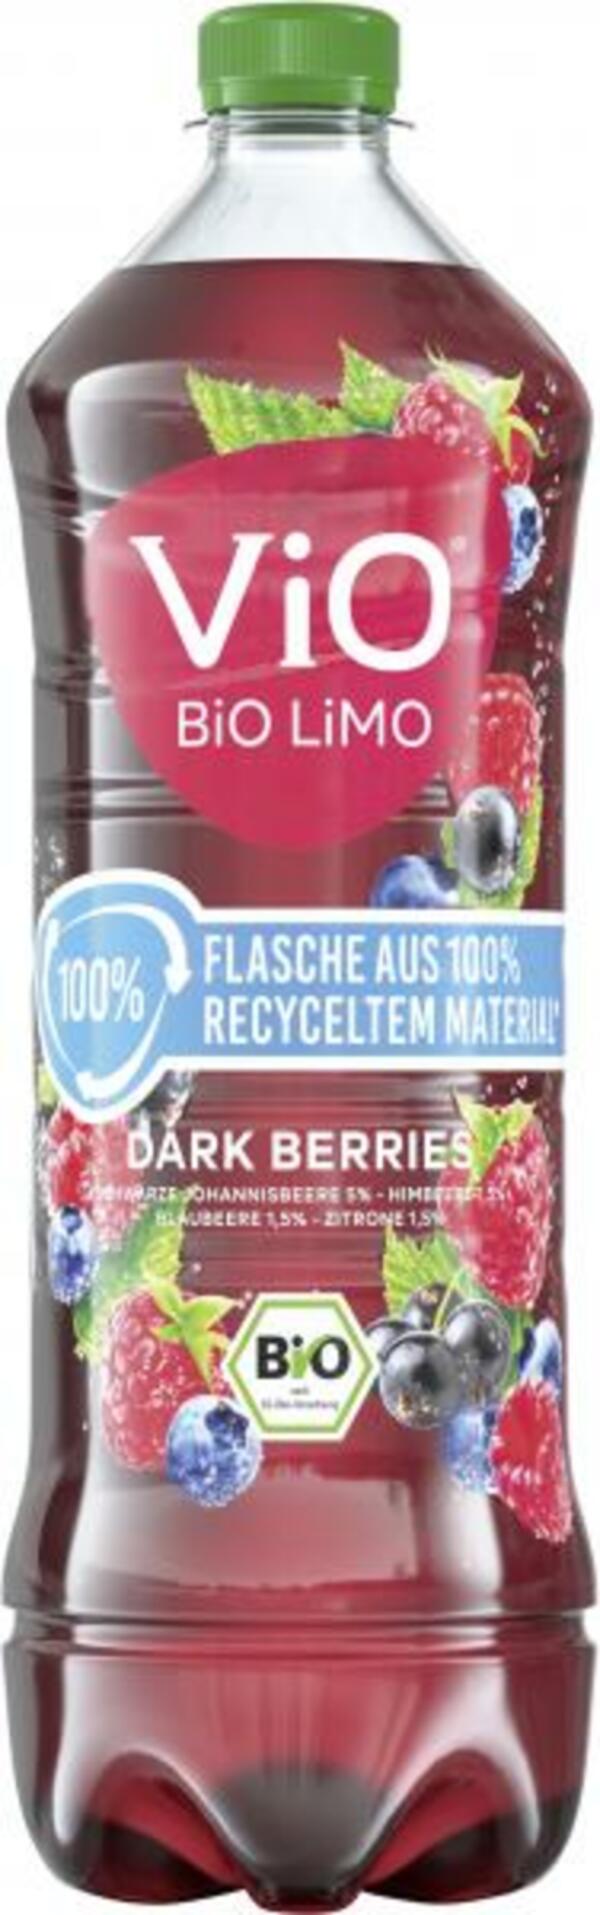 Bild 1 von Vio Bio Limo Dark Berries (Einweg)